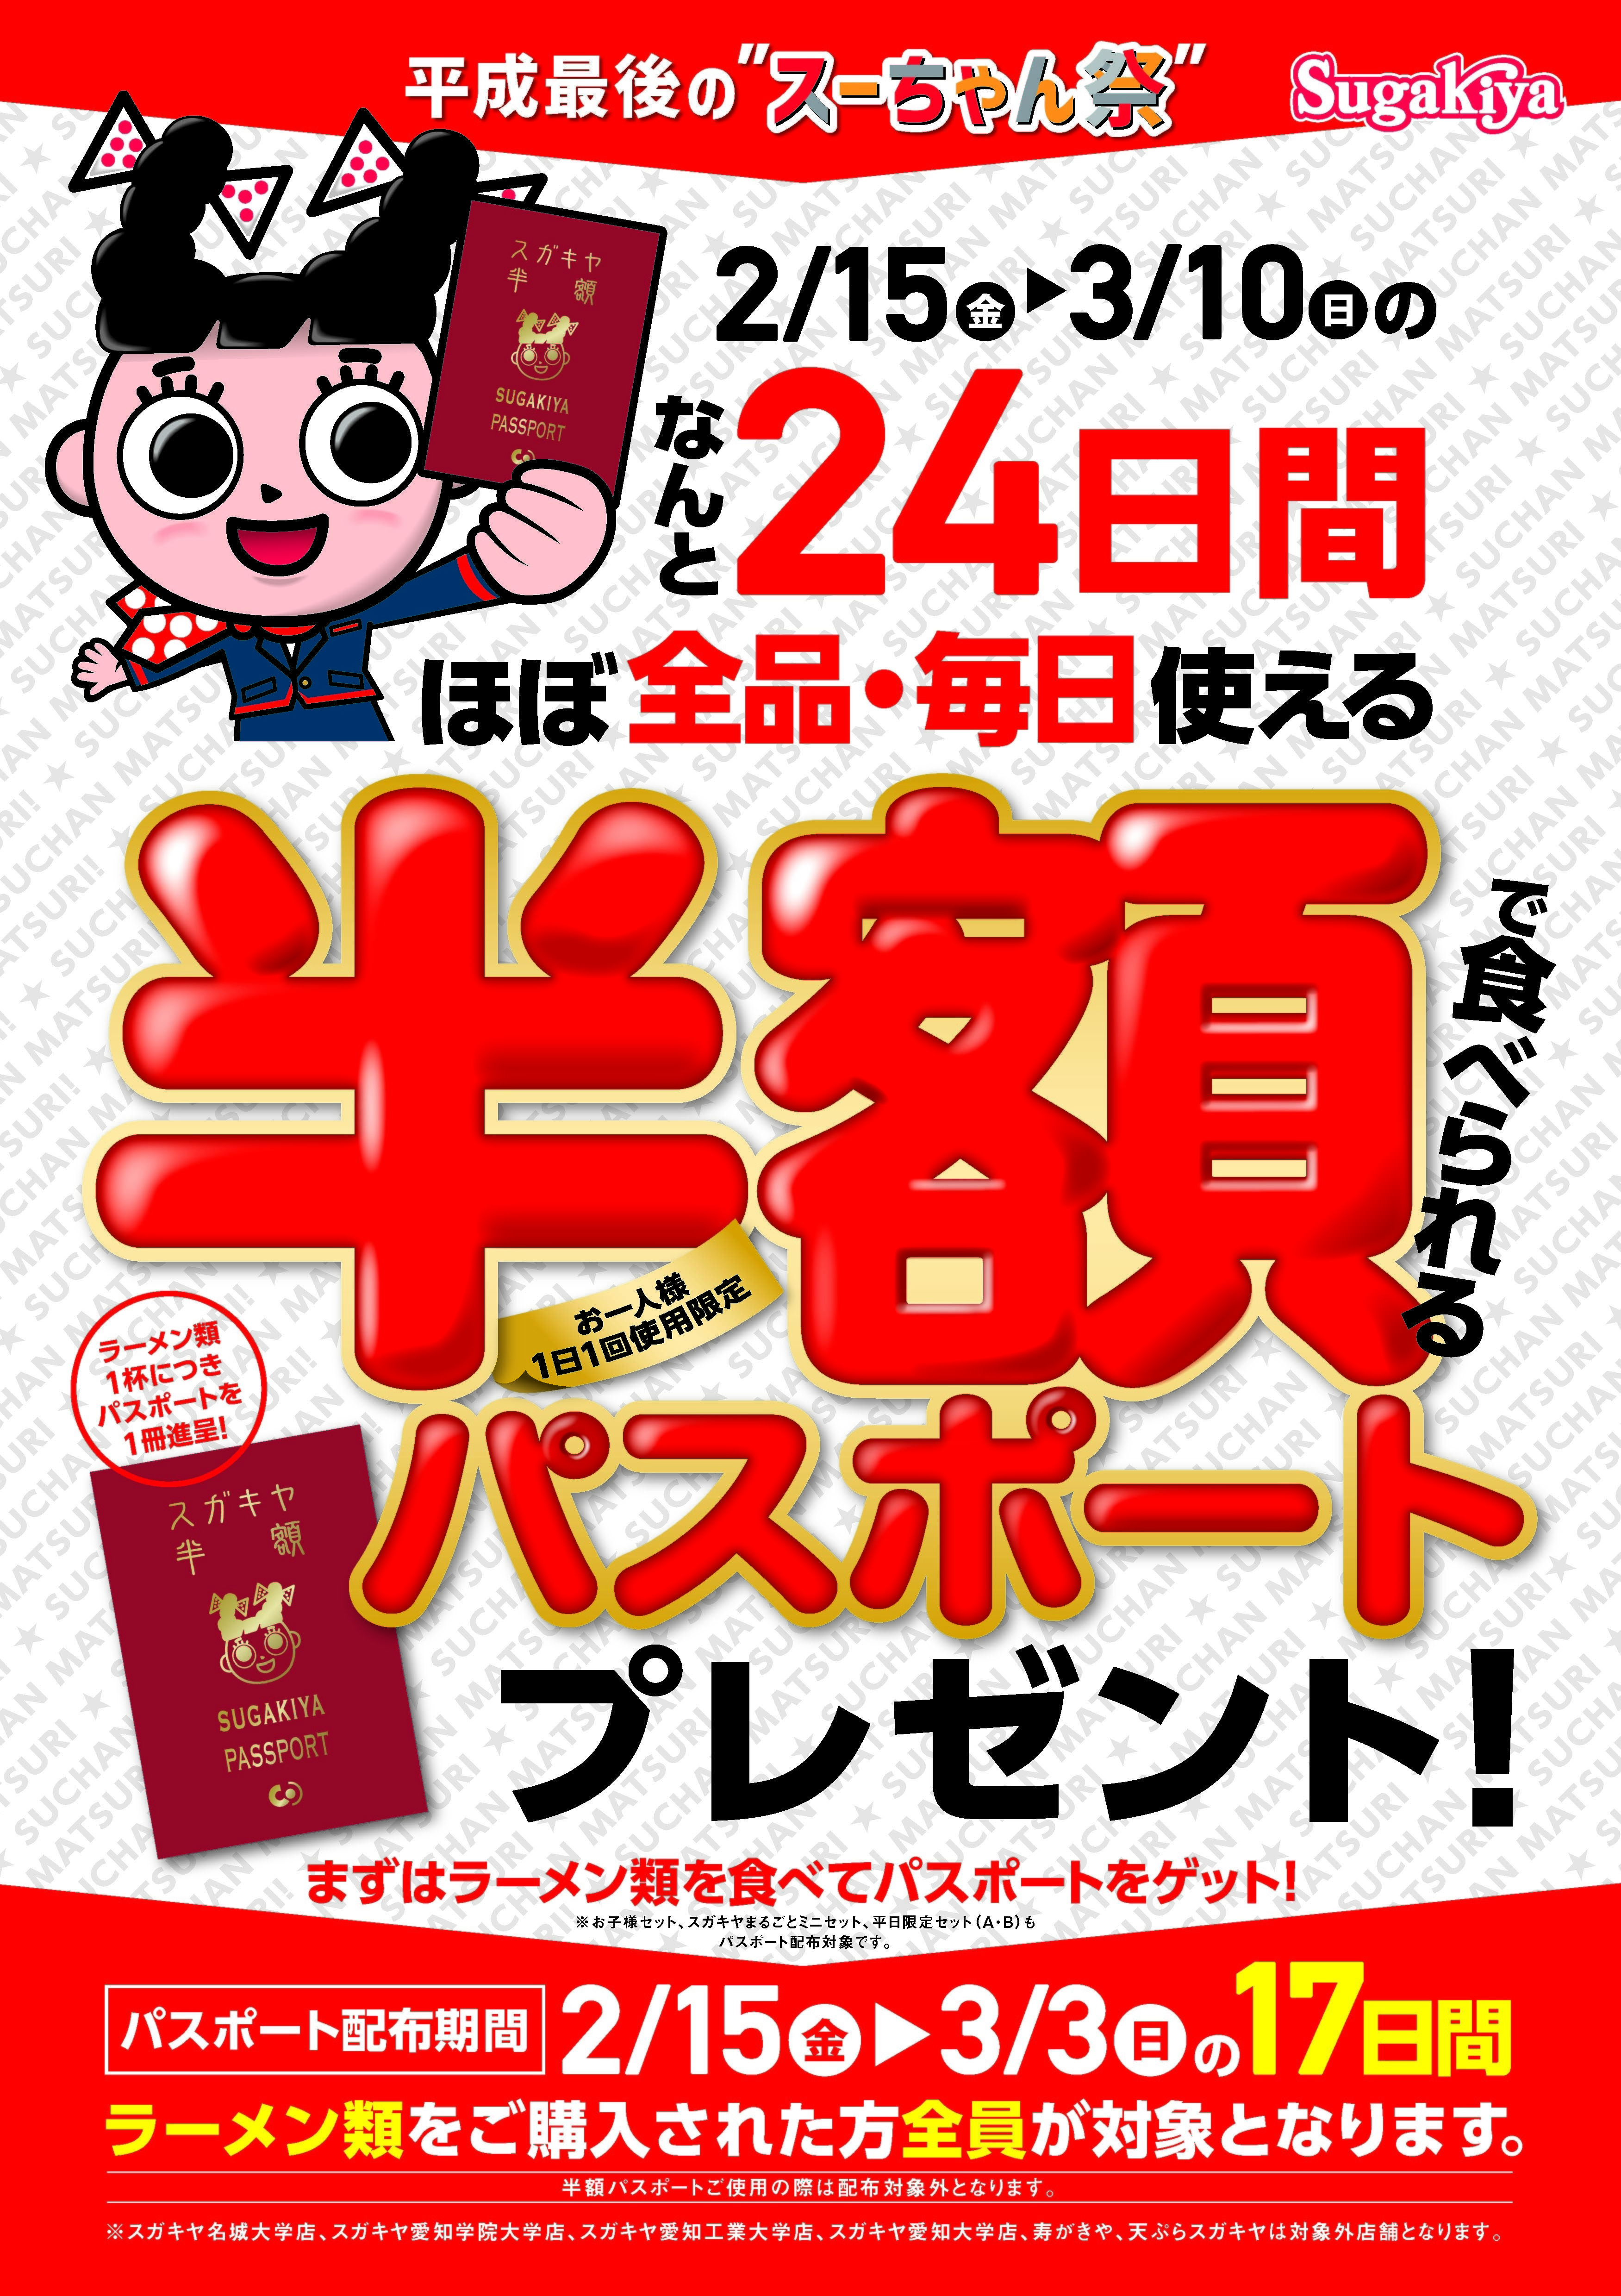 旗艦店「パパブブレ 青山店」、3/1(金)OPEN！